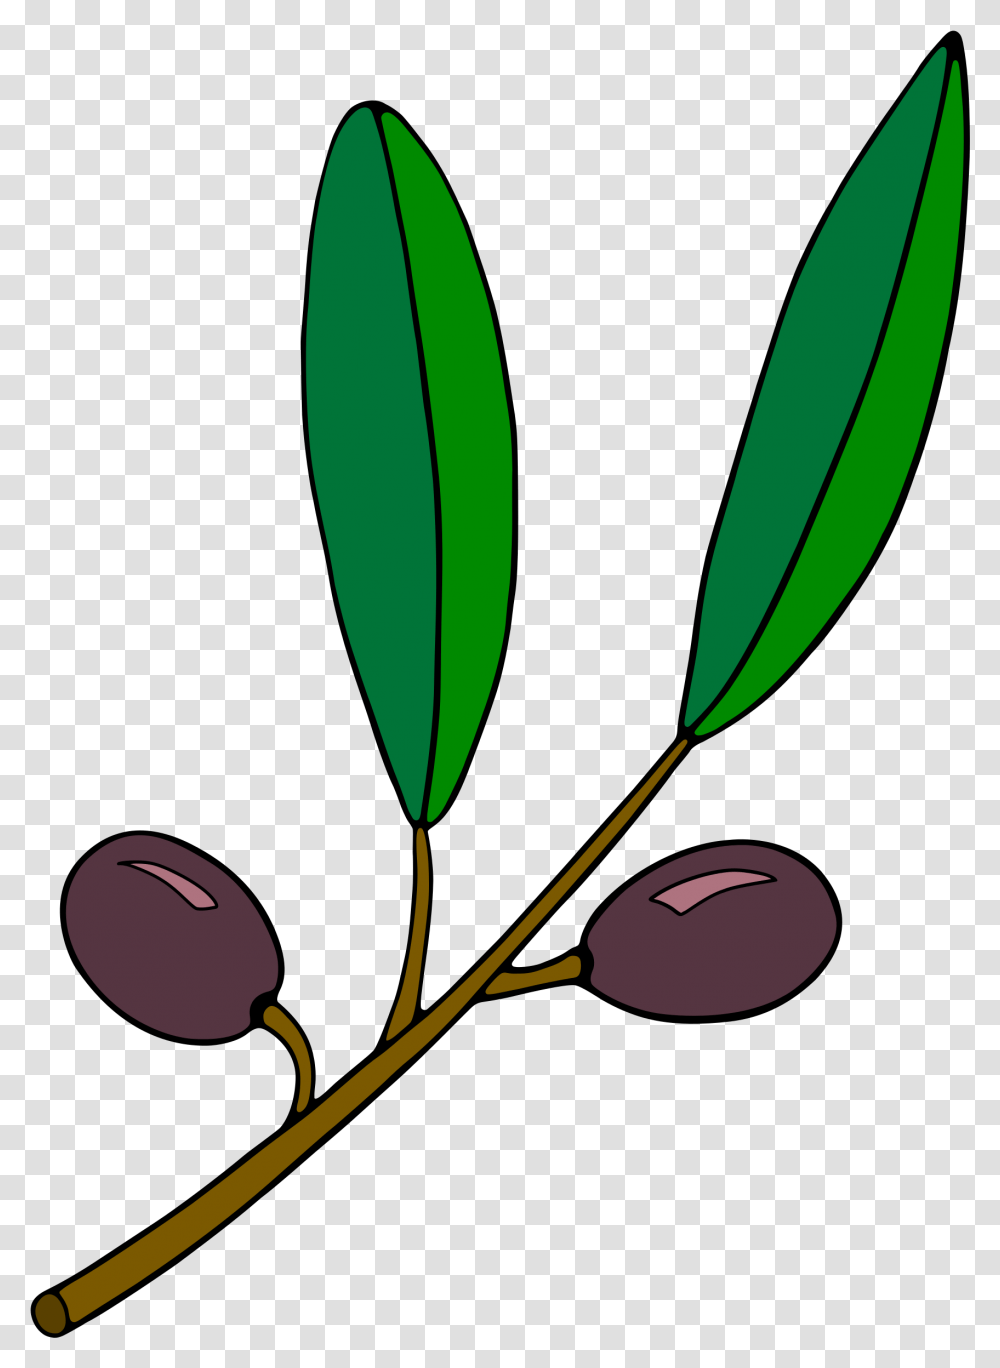 Olive Branch Clipart Olive Branch Clip Part, Leaf, Plant, Green, Fruit Transparent Png